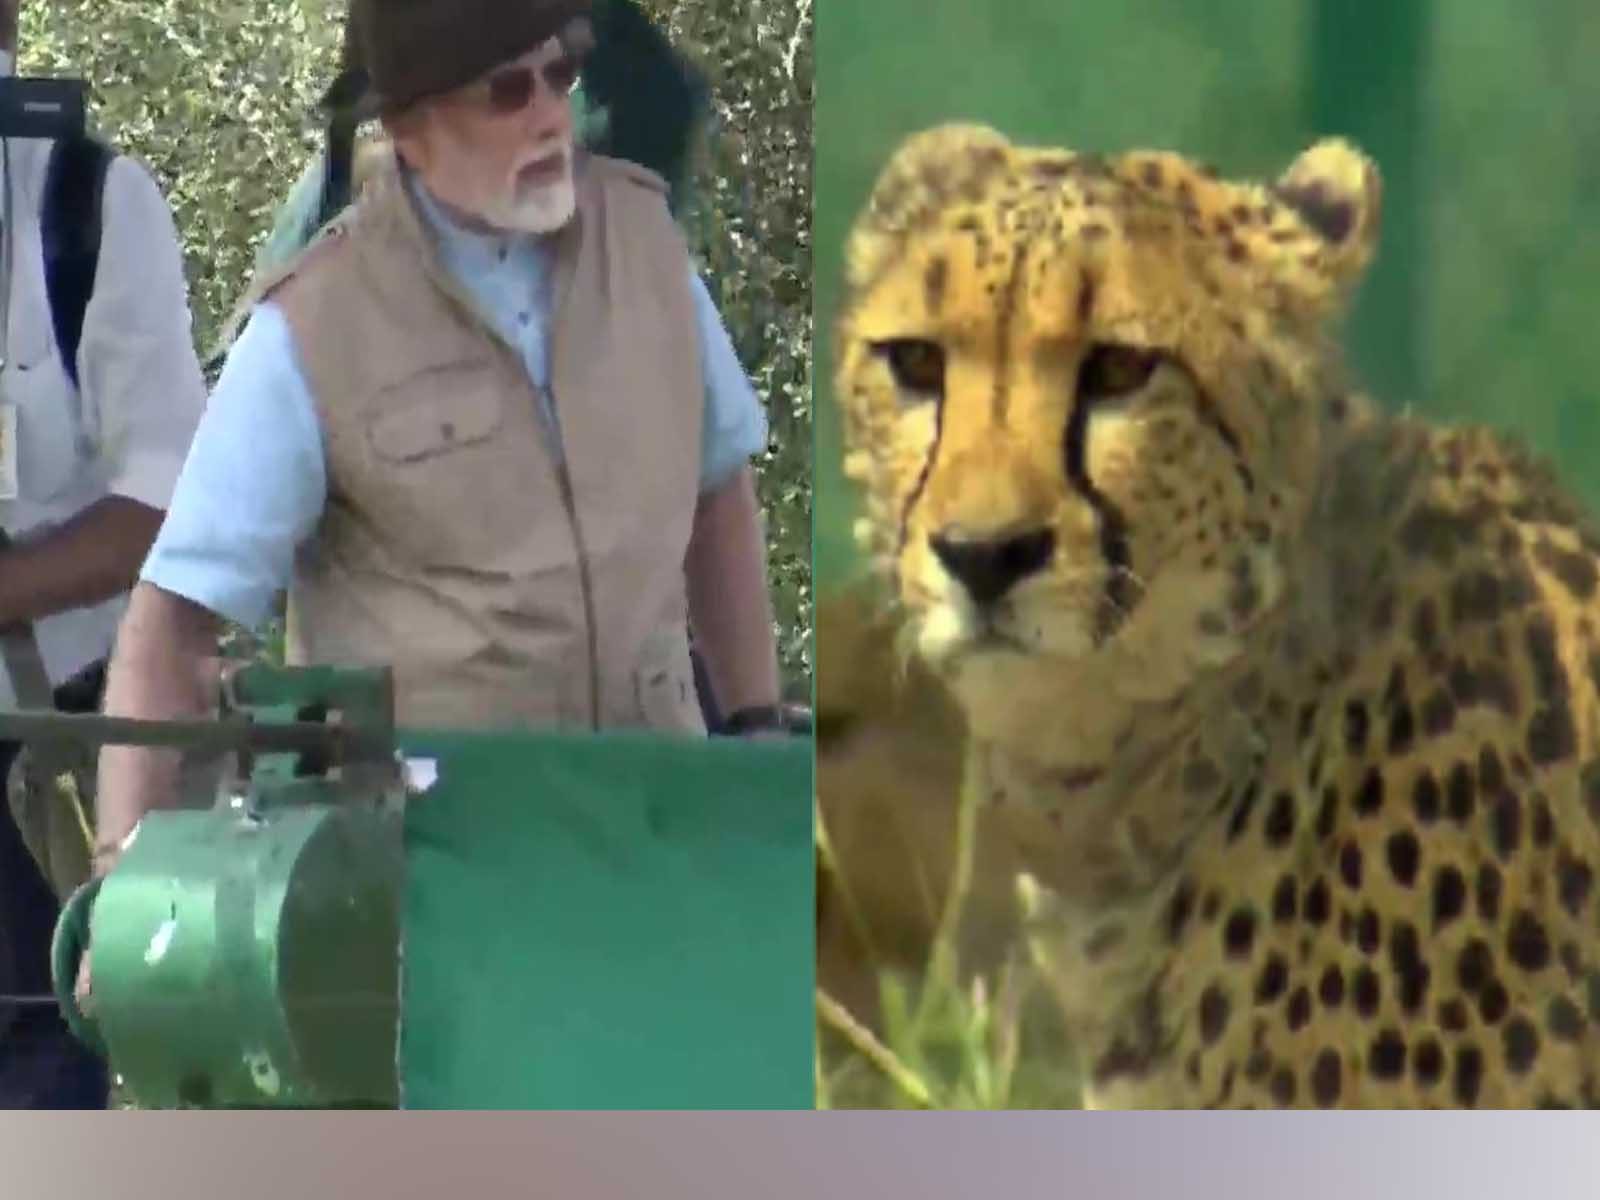  Cheetah in India: PM ਮੋਦੀ ਦਾ ਜਨਮਦਿਨ 'ਤੇ ਜਨਤਾ ਨੂੰ ਤੋਹਫਾ, ਕੁਨੋ ਨੈਸ਼ਨਲ ਪਾਰਕ 'ਚ ਛੱਡੇ ਚੀਤੇ